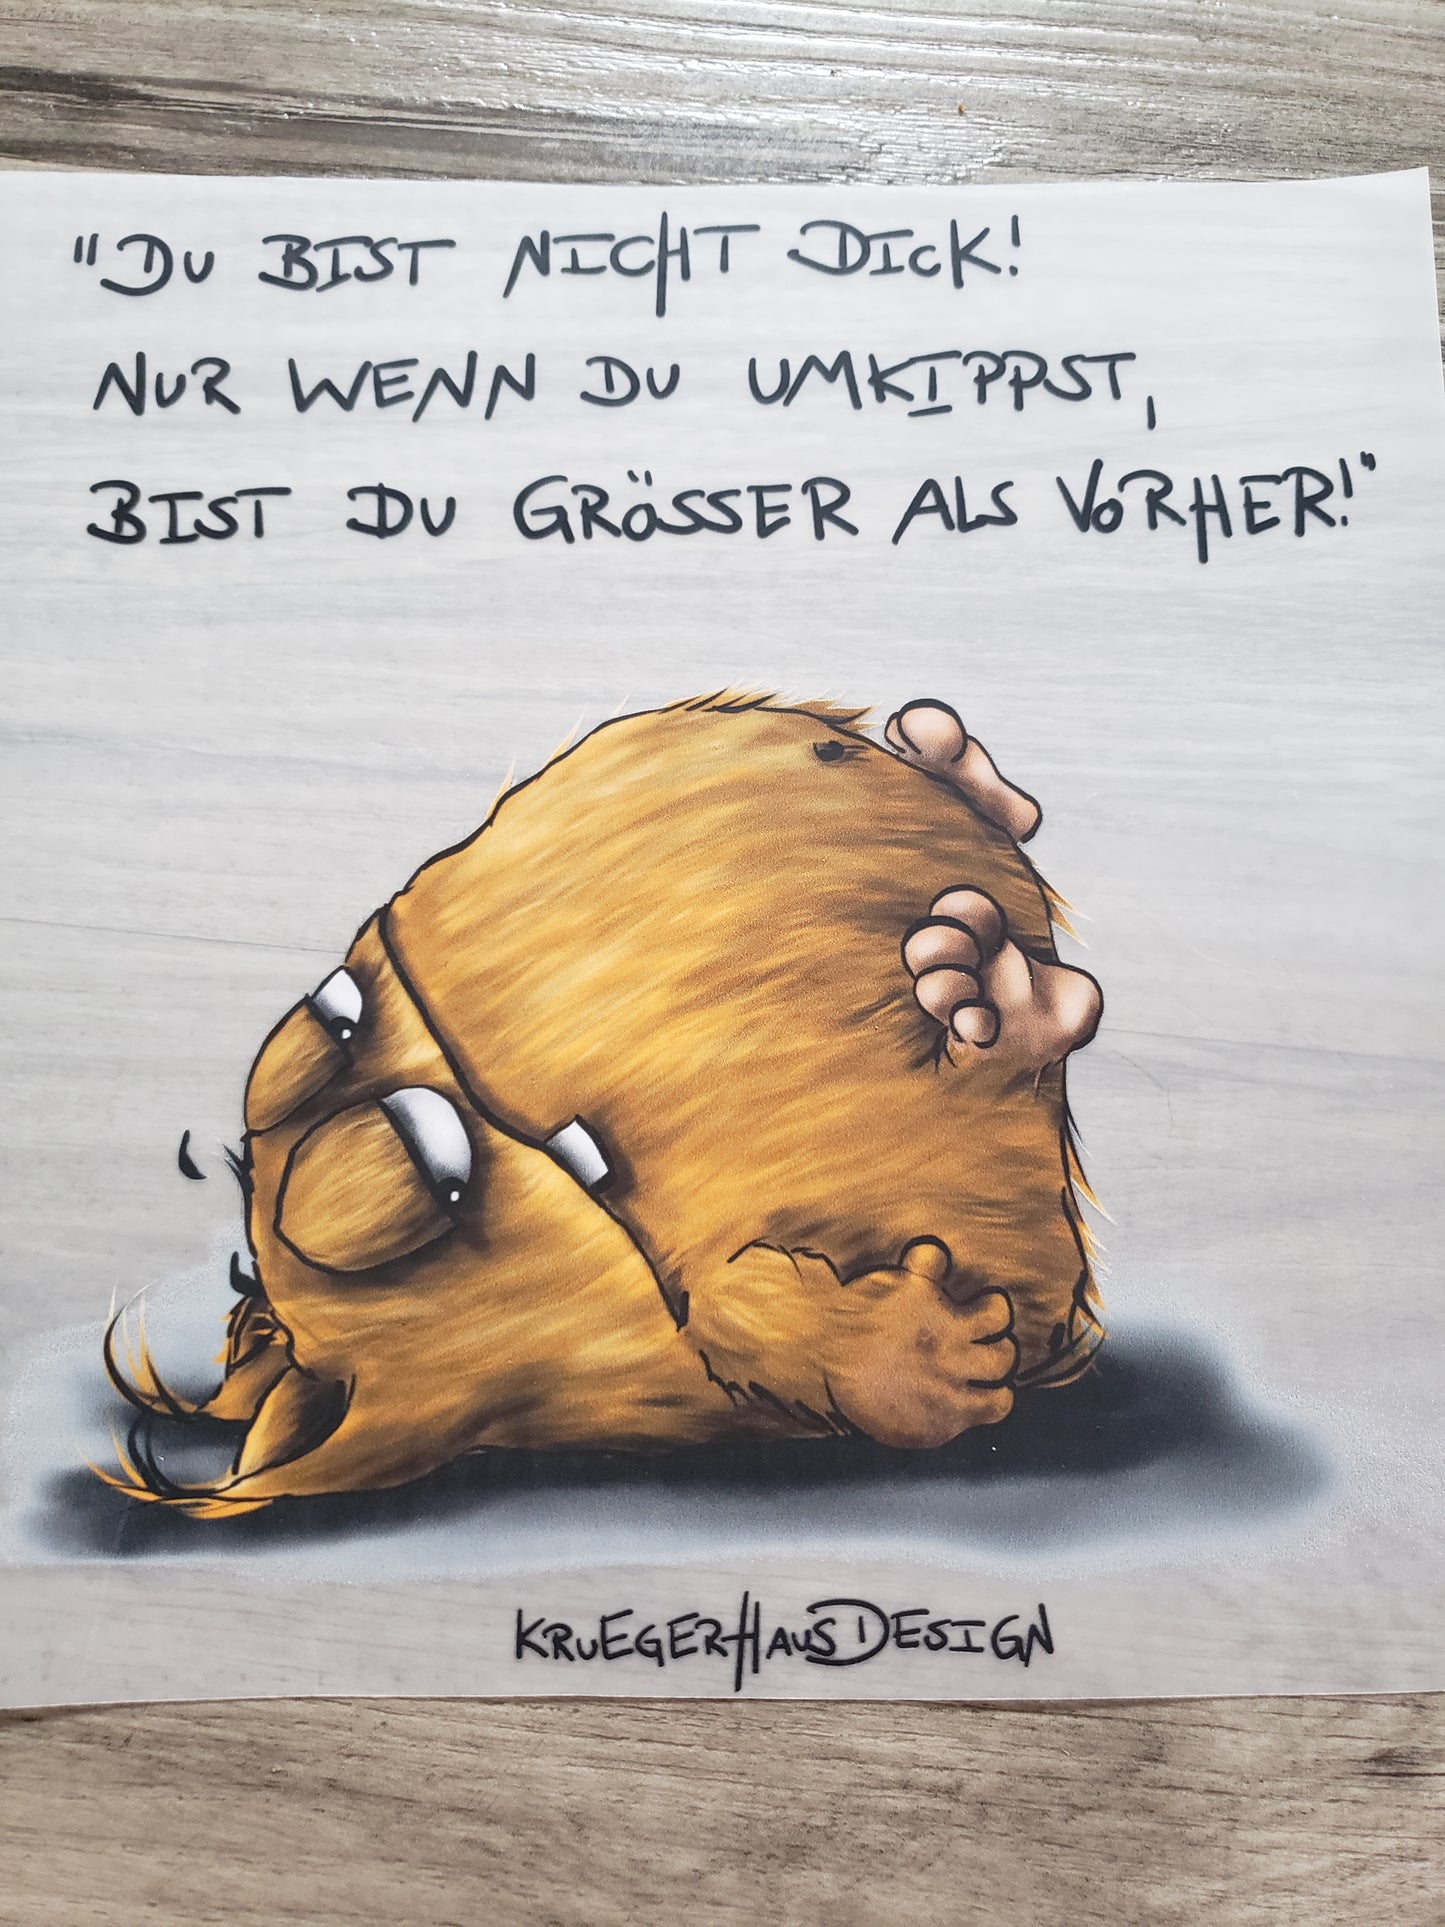 Bügelbild Kruegerhausdesign Monster, Du bist nicht dick..." mit Liebe illustriert